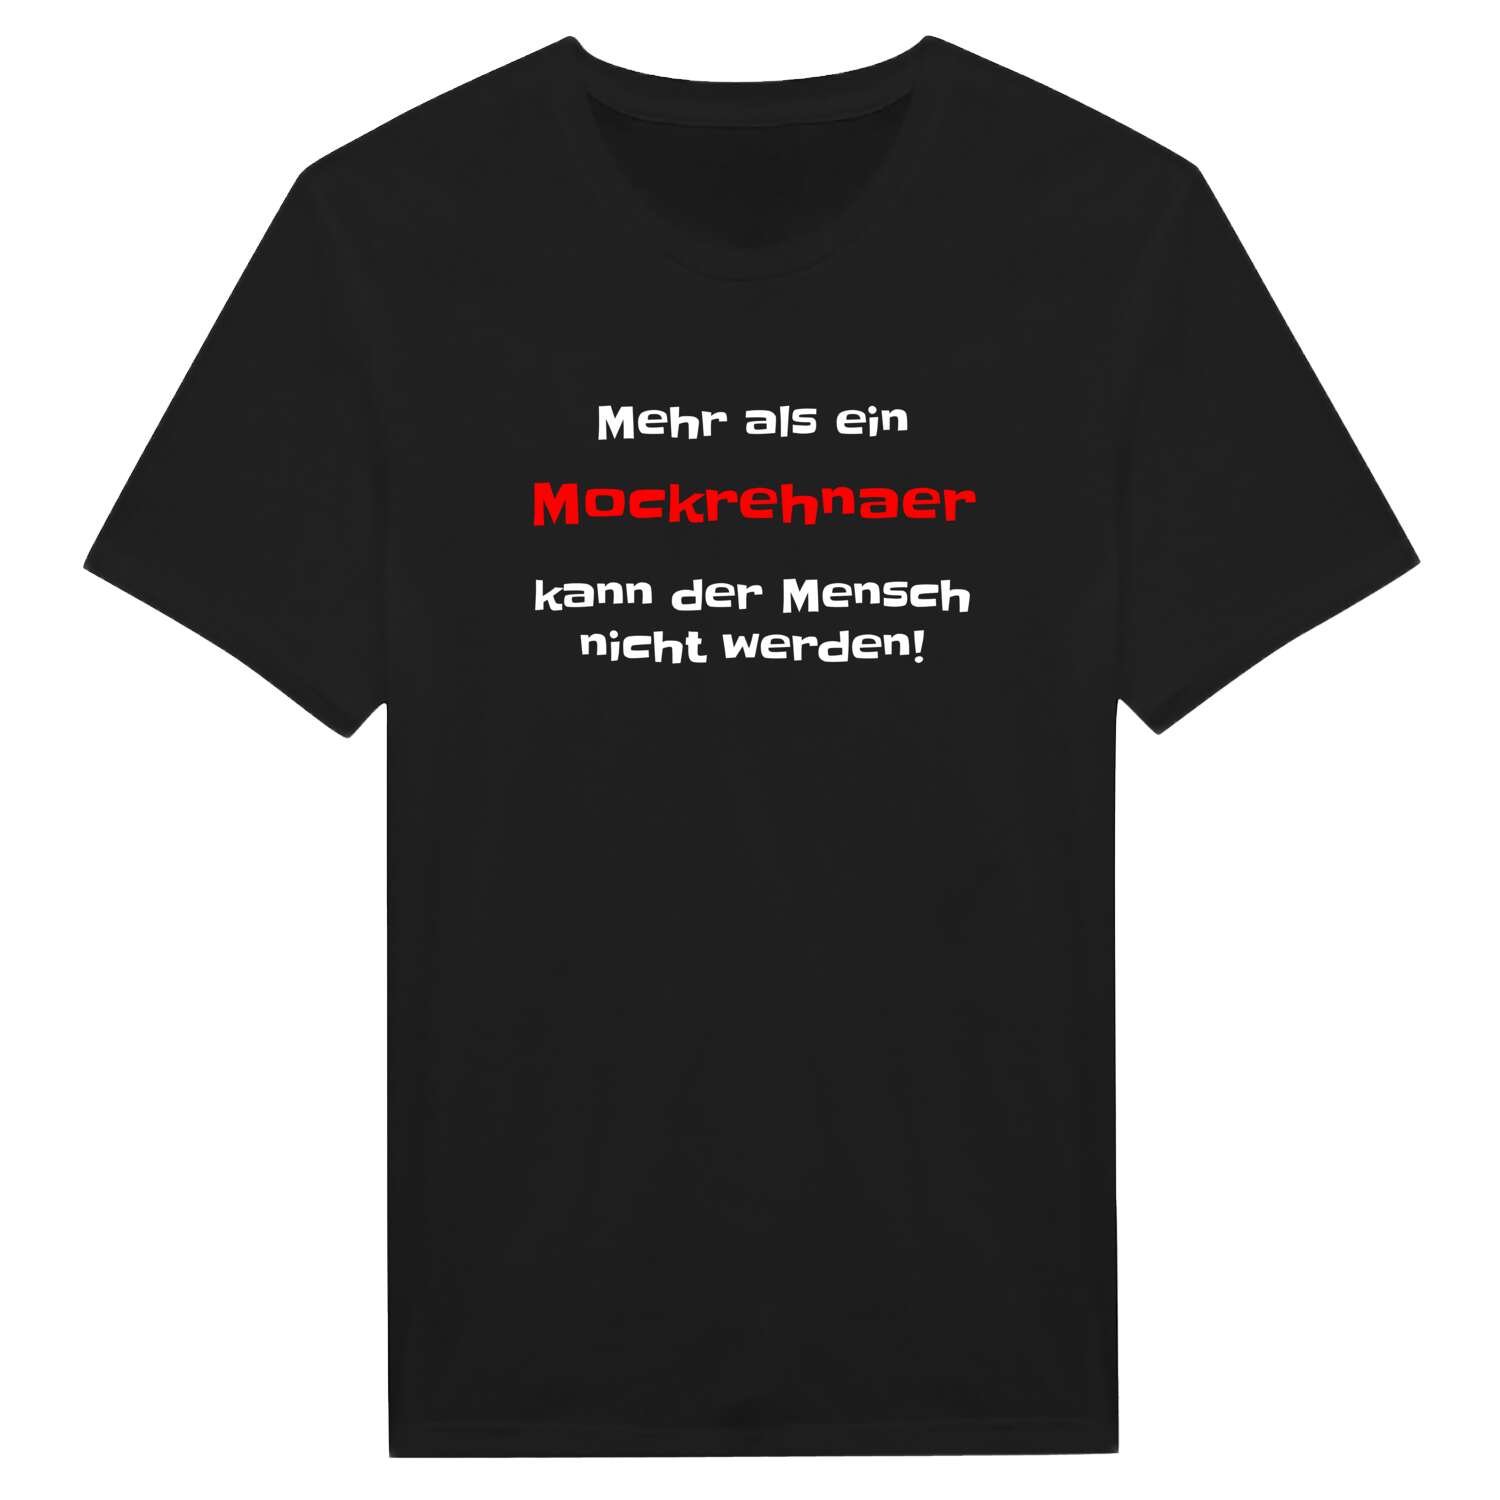 Mockrehna T-Shirt »Mehr als ein«